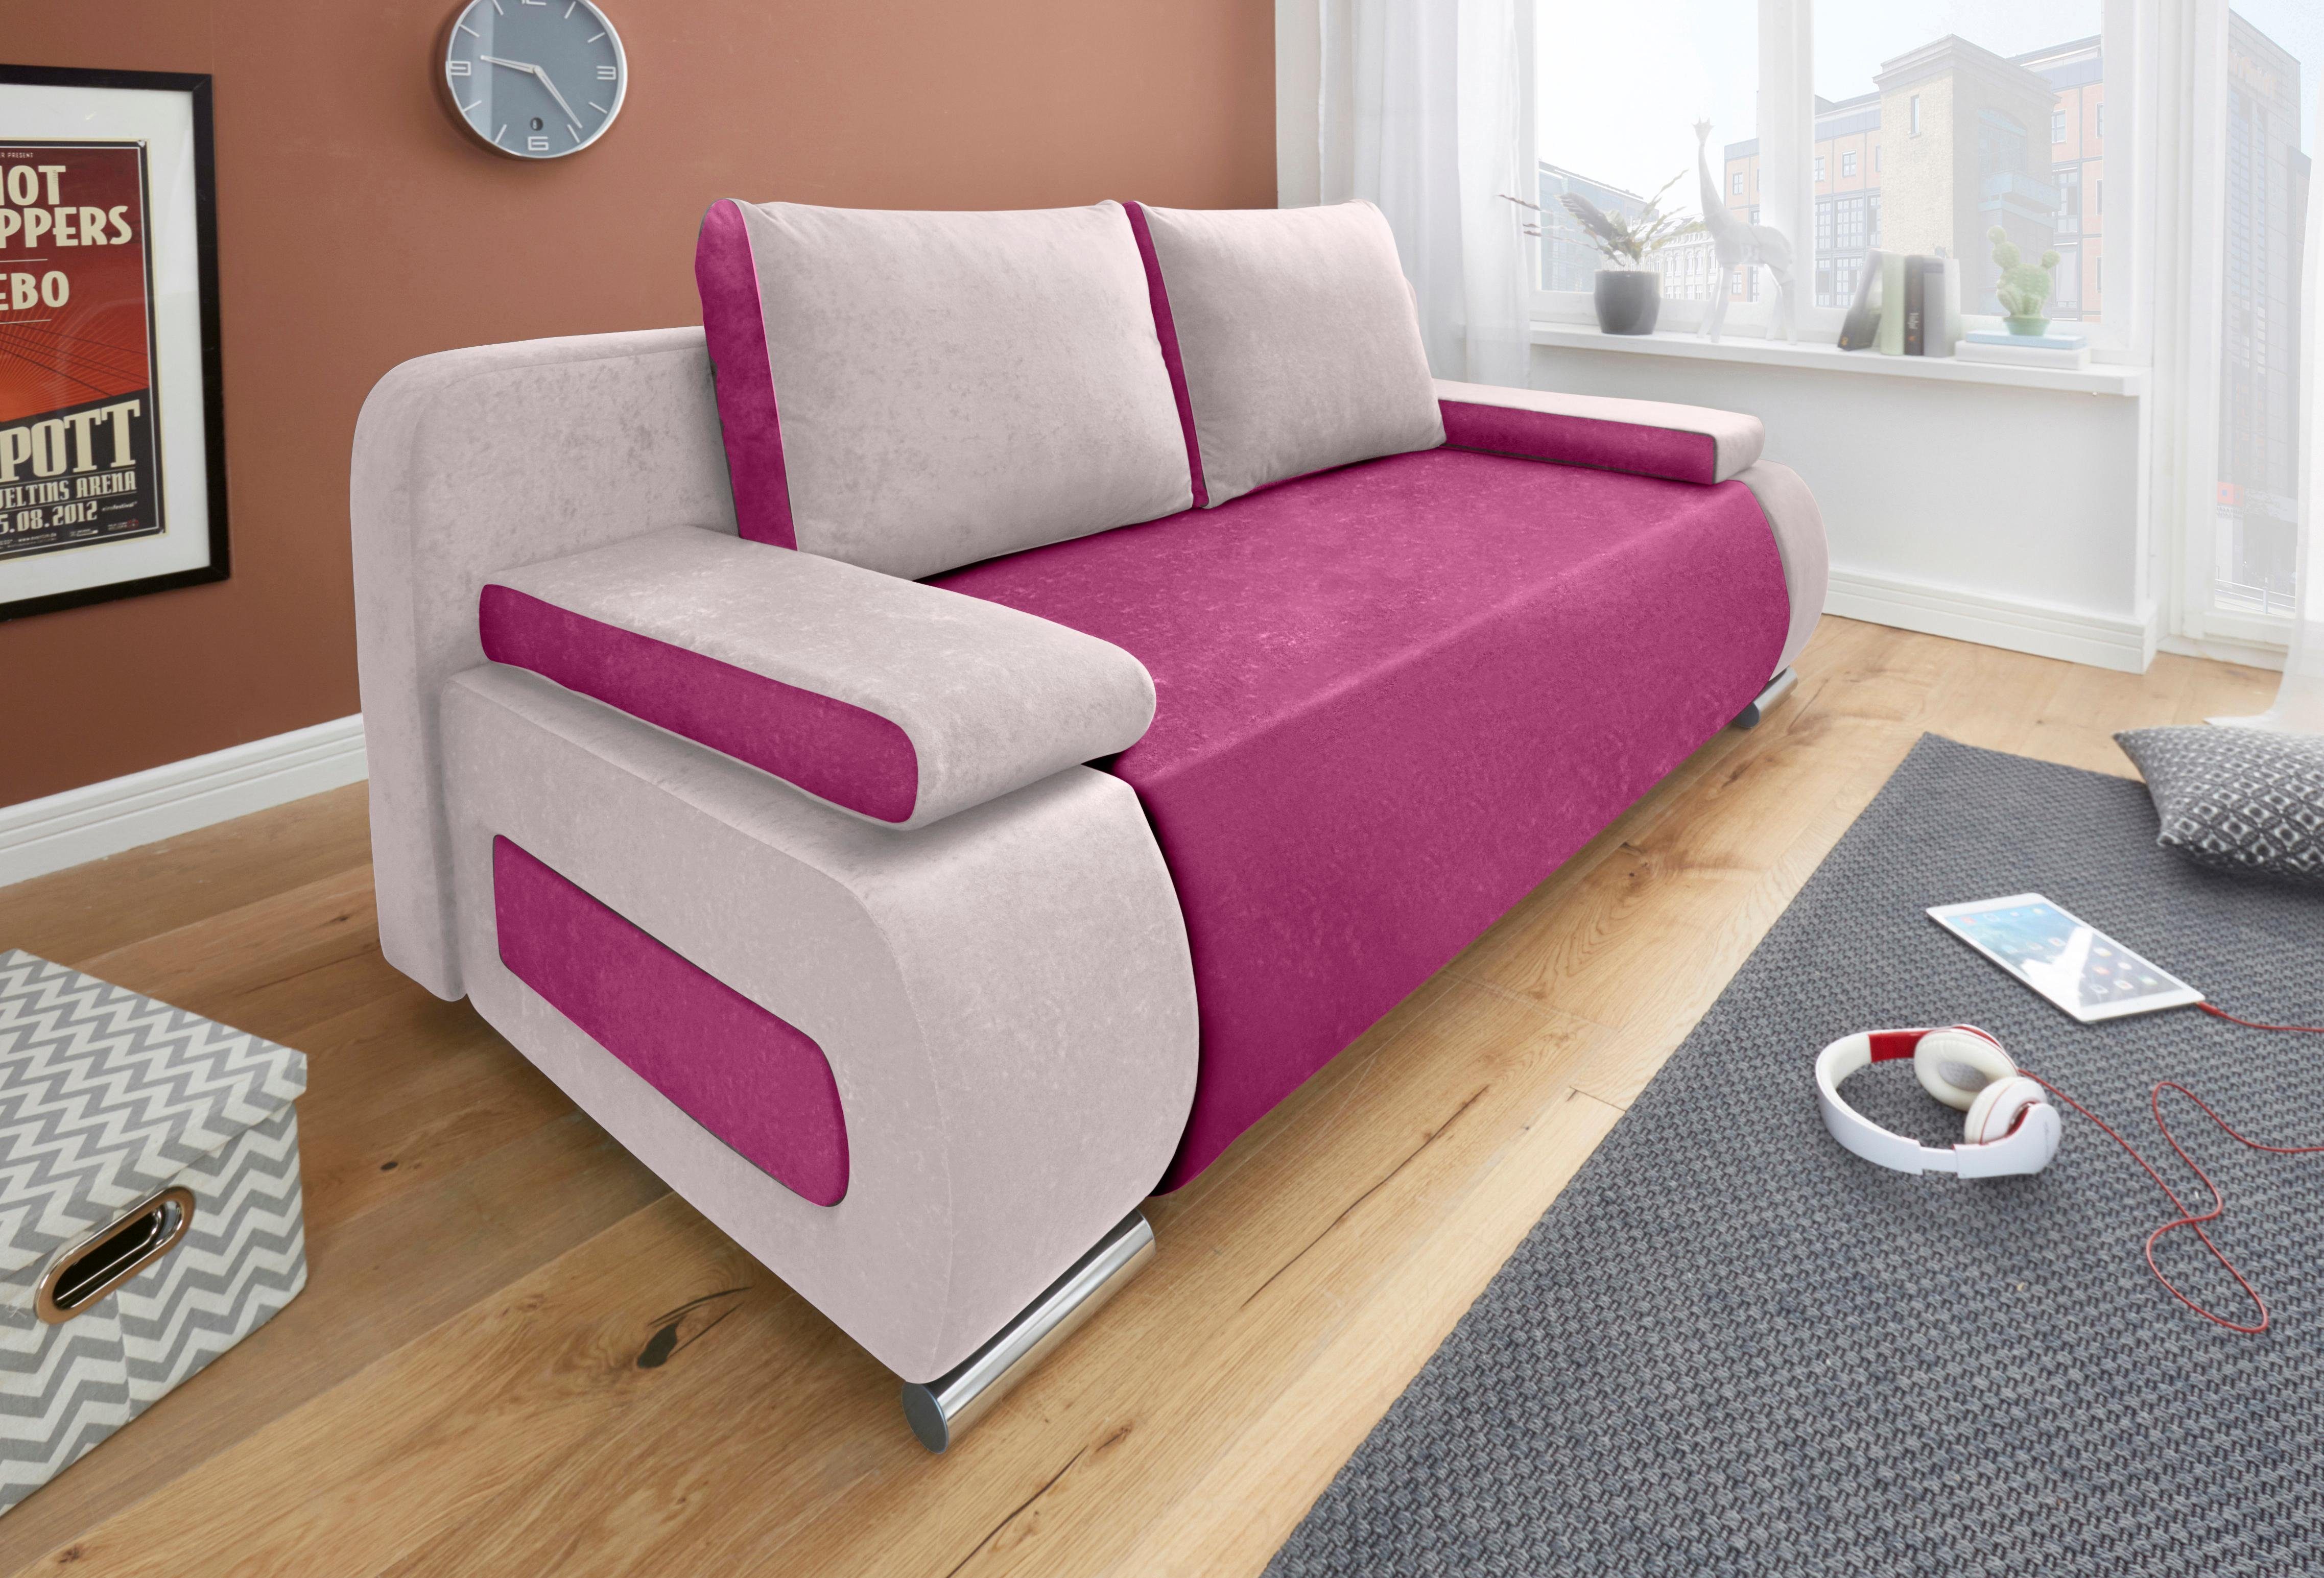 collection ab slaapbank moritz met slaapbank functie en bedbox, comfortabele binnenvering roze